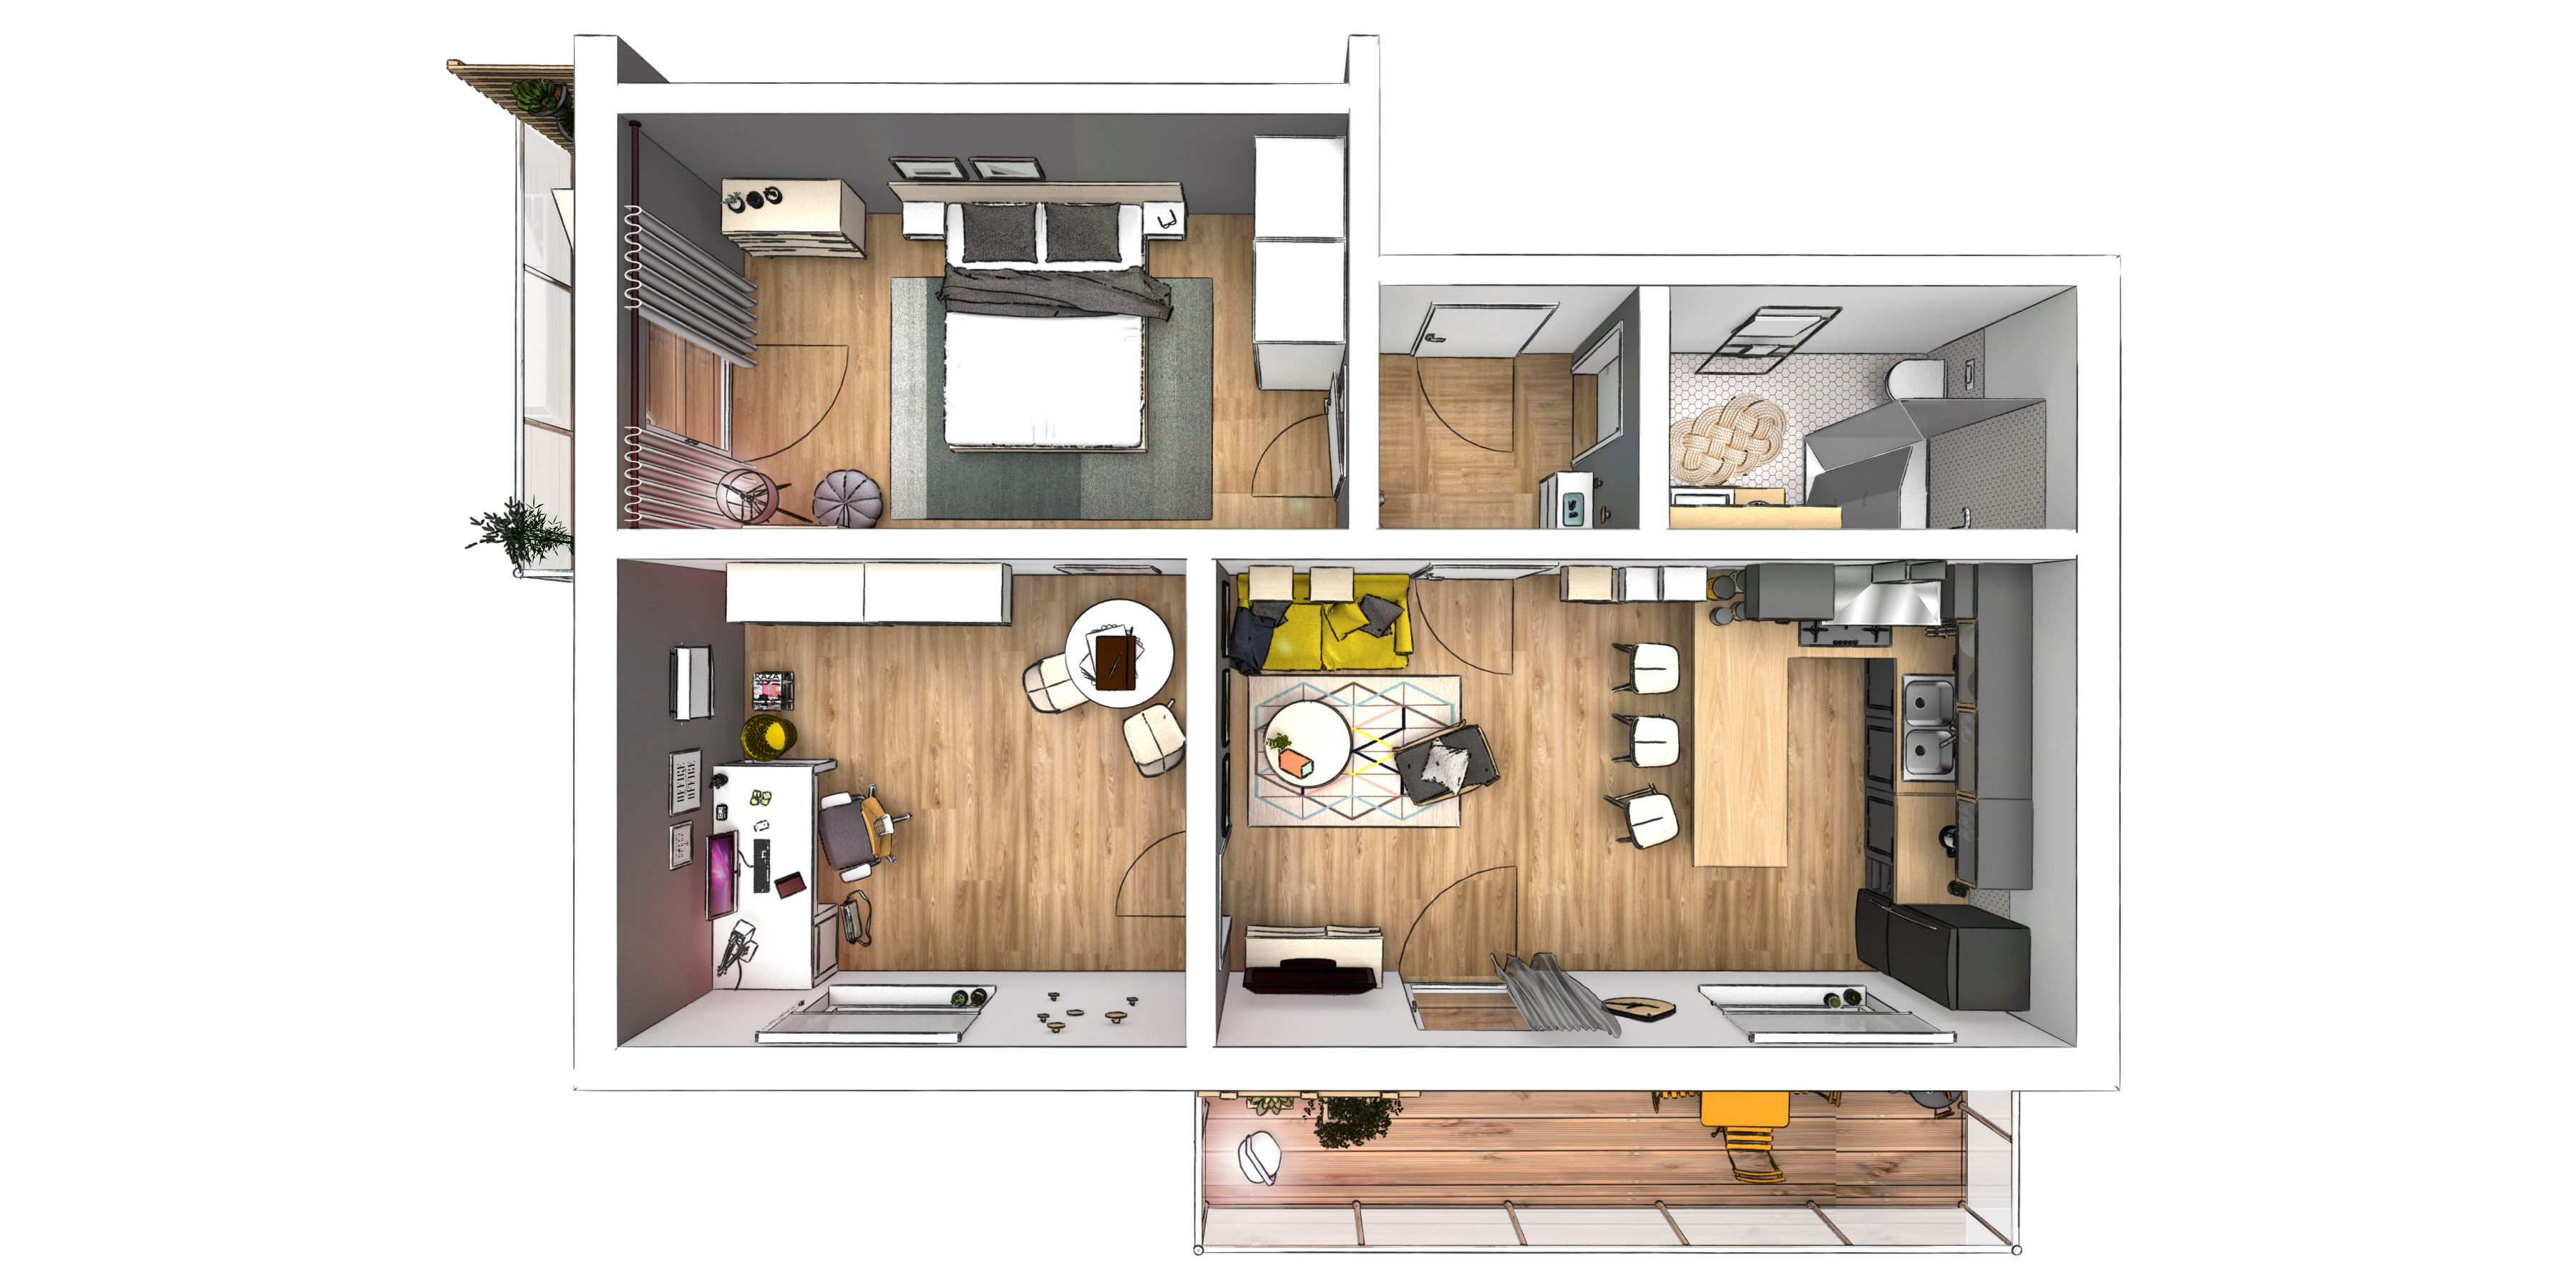 Draufsicht: 3D Rendering einer modernen Wohnung. Innenarchitektur